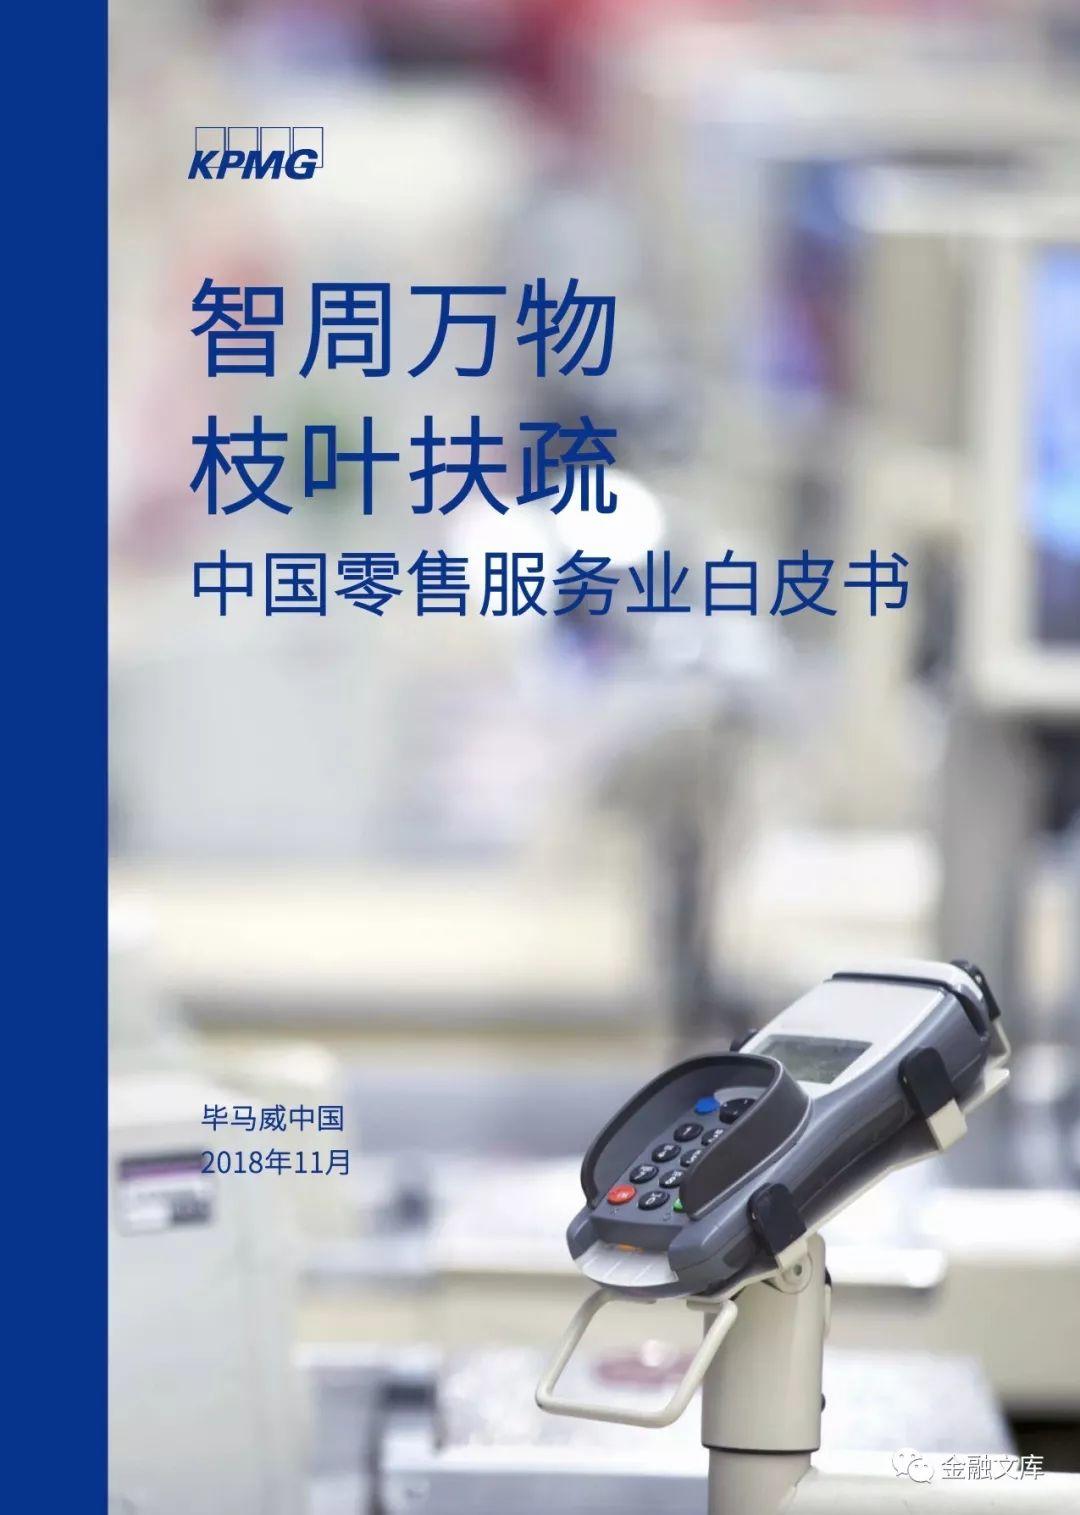 毕马威：中国零售服务业白皮书——数字化整合营销势在必行